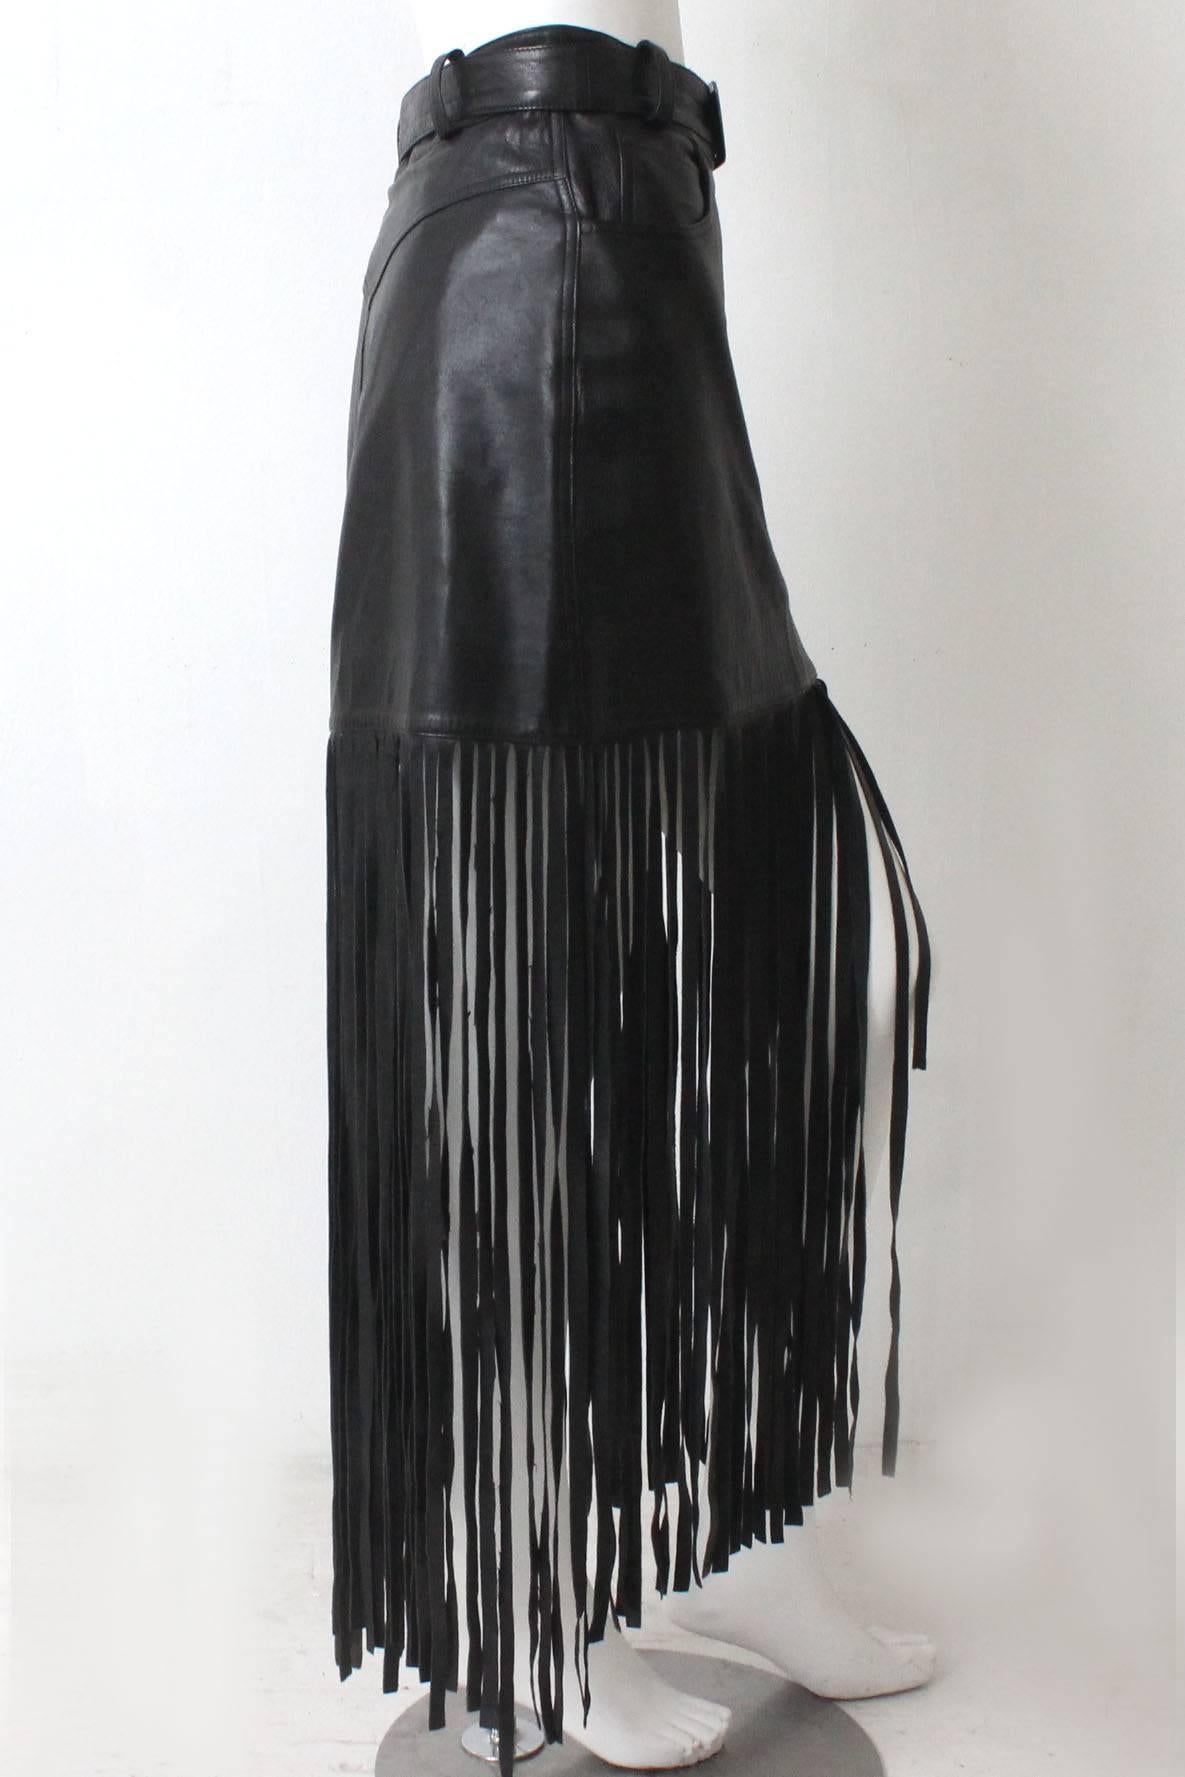 1980s Claude Montana Black Leather Floor Length Fringe Skirt For Sale 1